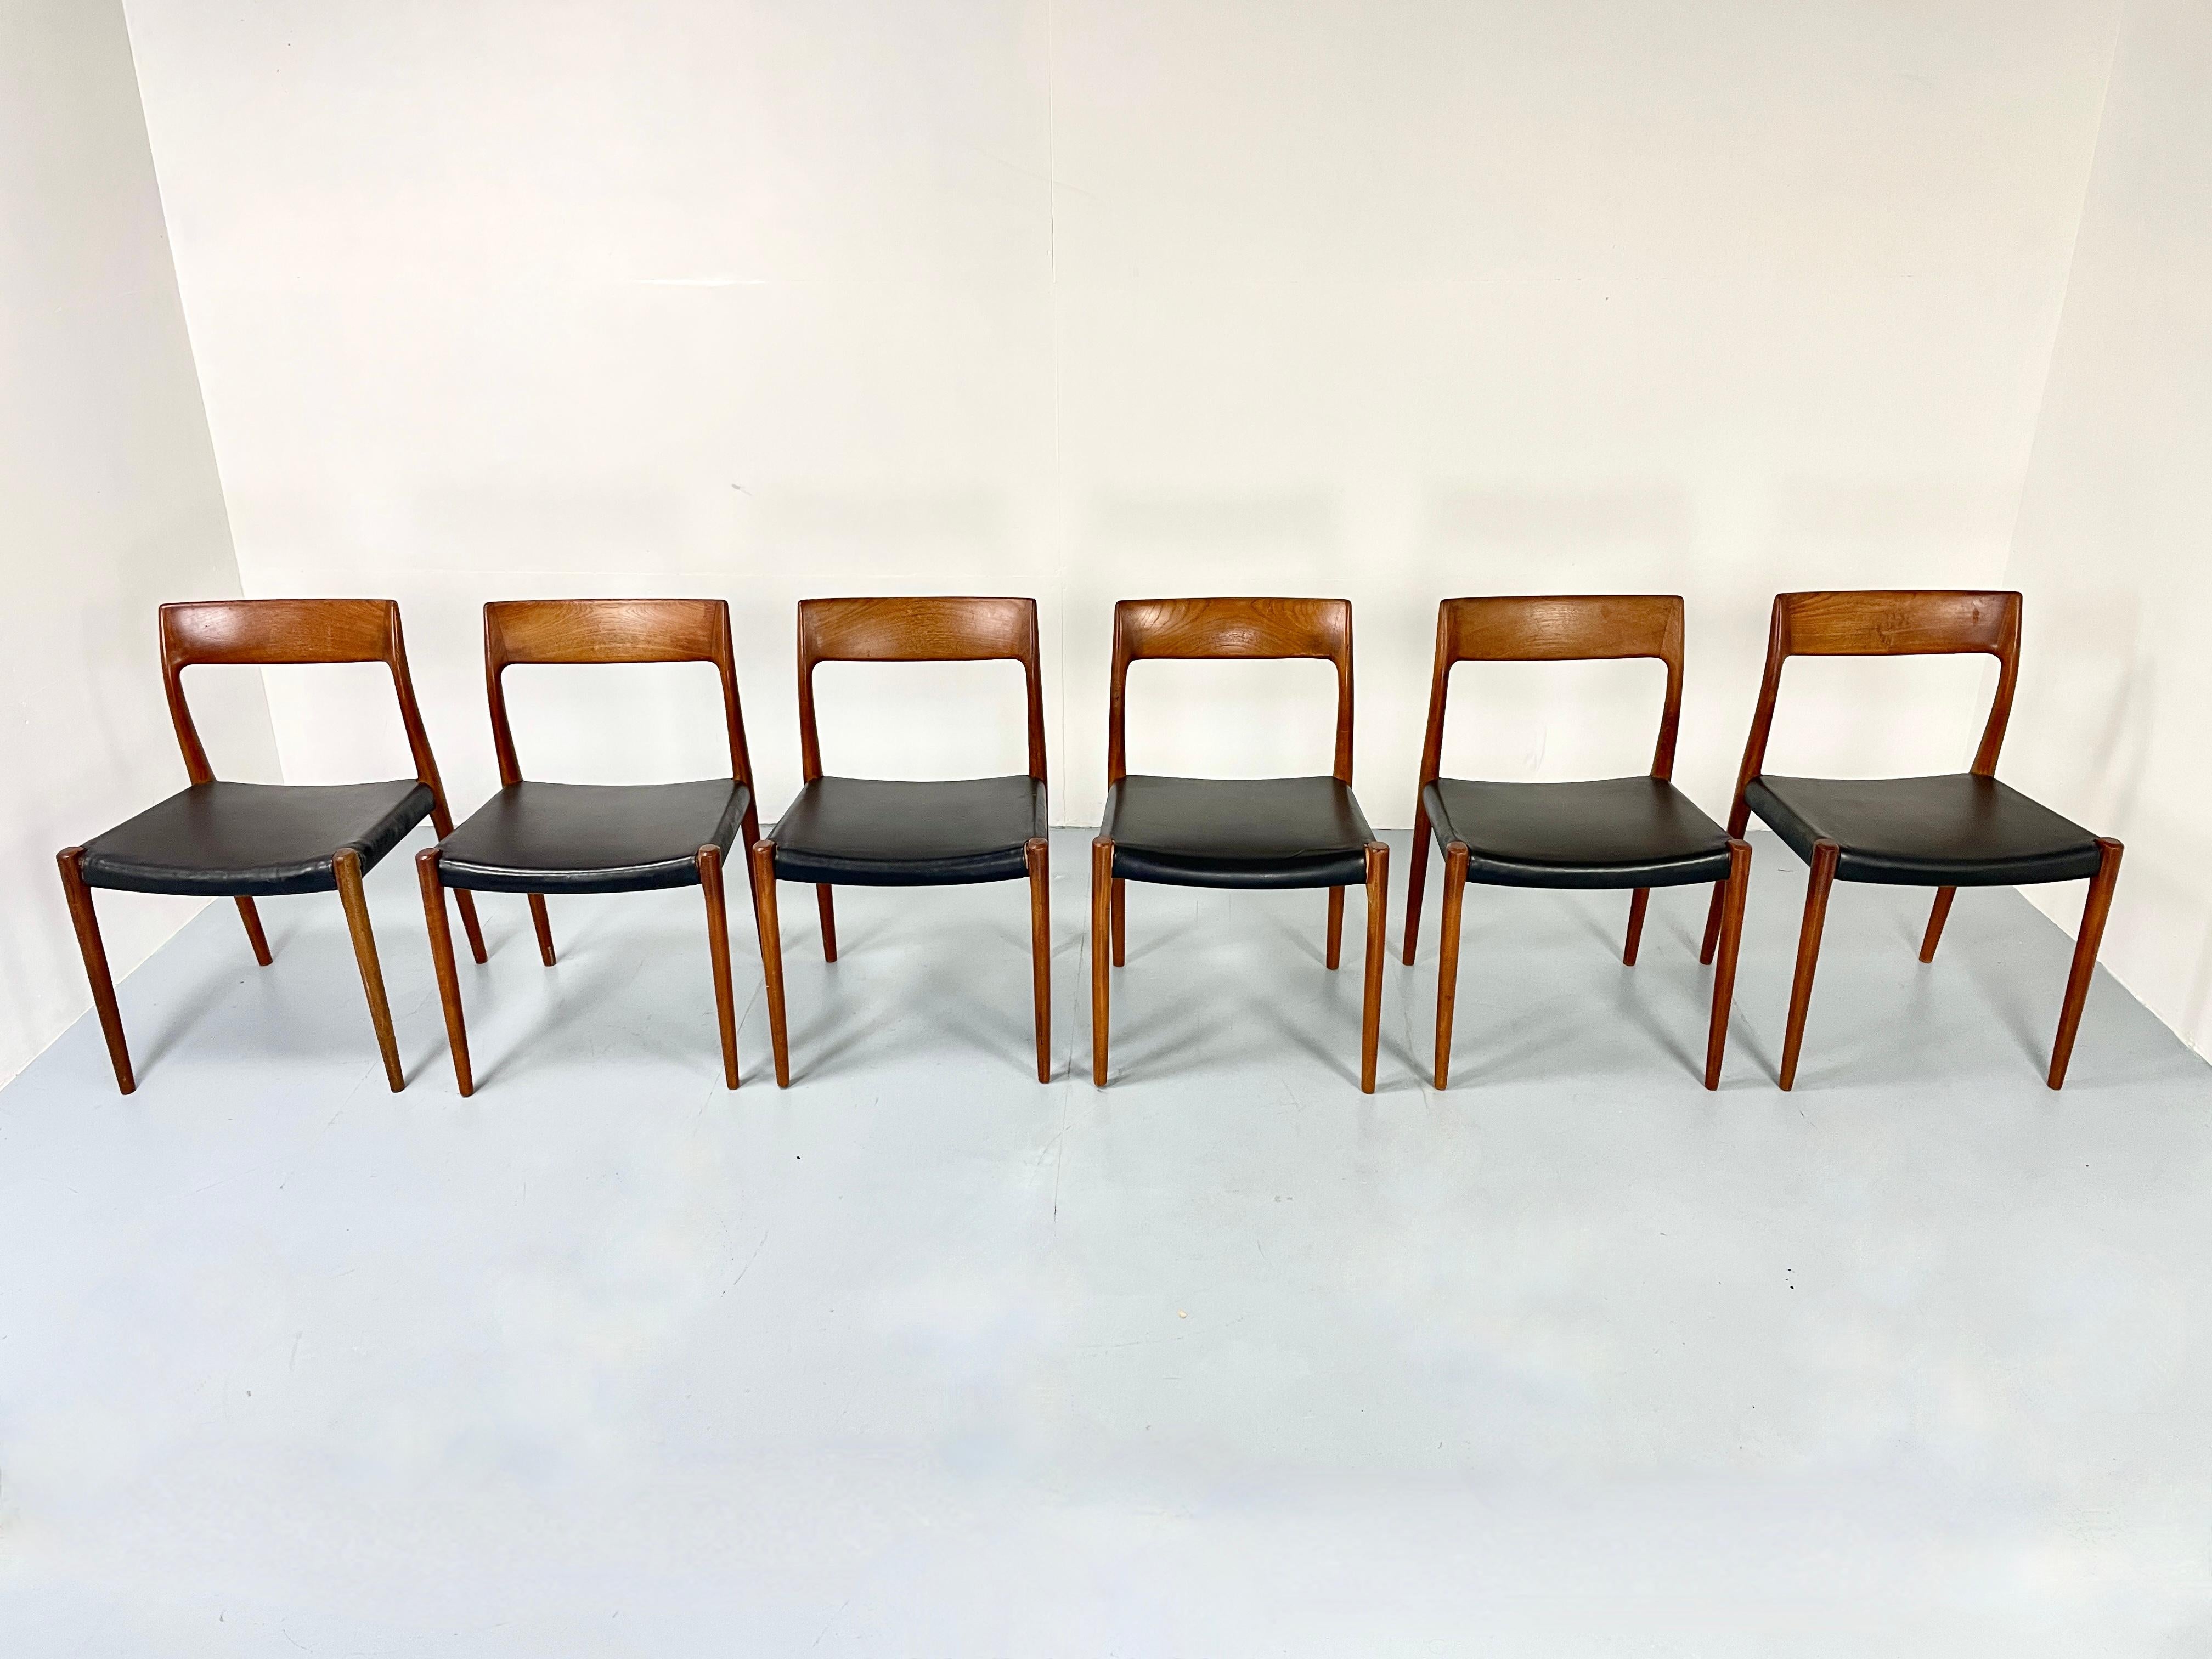 Ensemble authentique iconique de six chaises Niels O. Møller Nr. 77 en teck chaud et cuir de ski noir.

Cet ensemble provient du premier propriétaire.